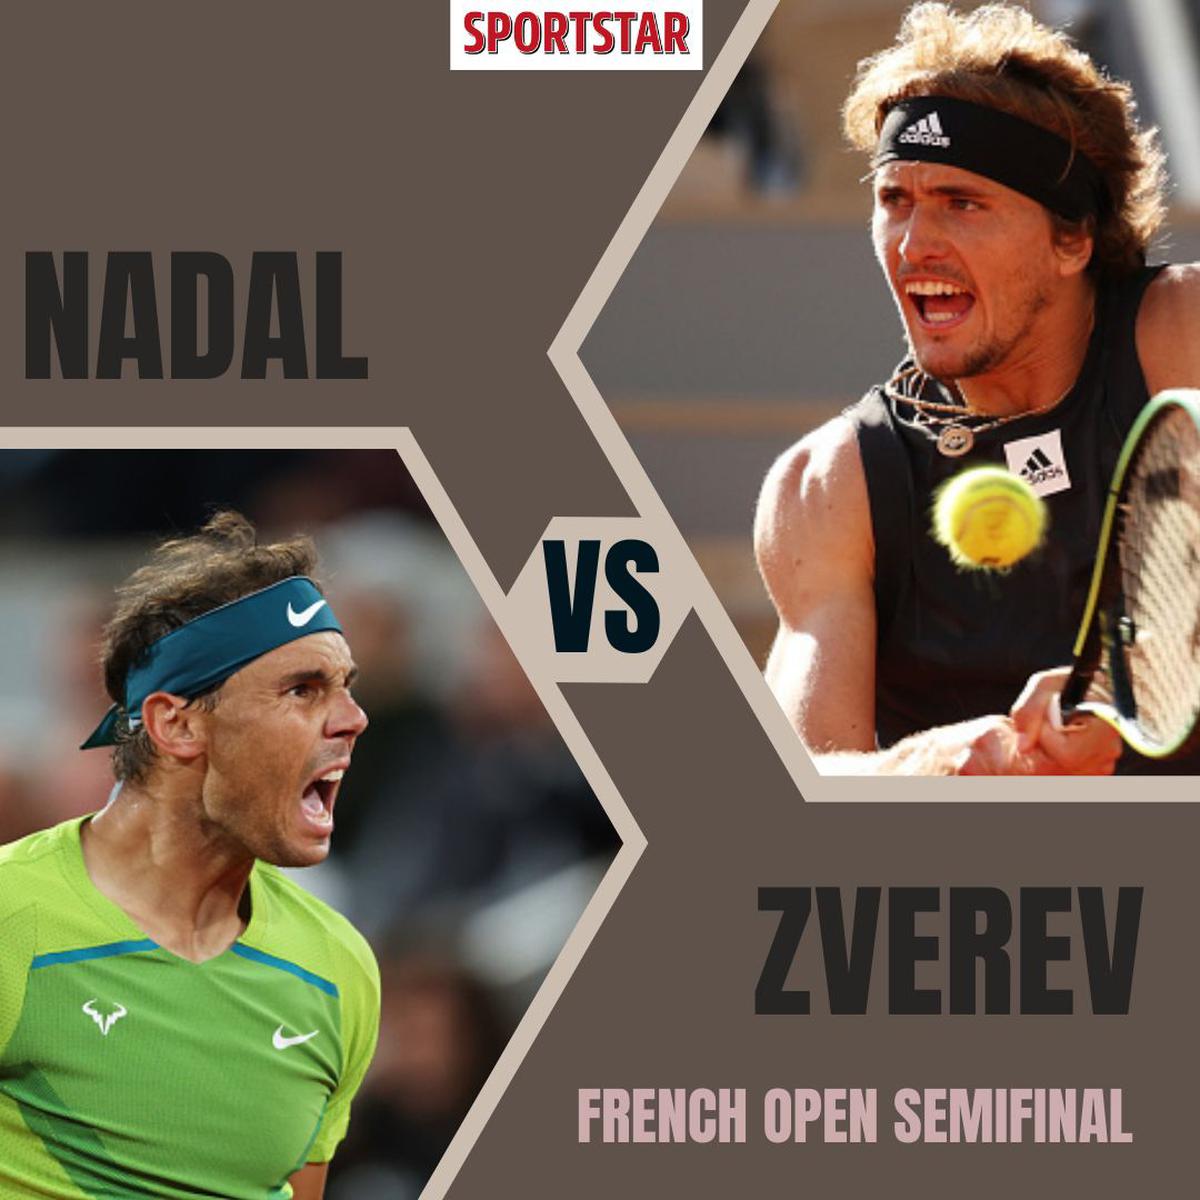 Nadal vs Zverev HIGHLIGHTS Nadal reaches French Open final, Zverev retires hurt